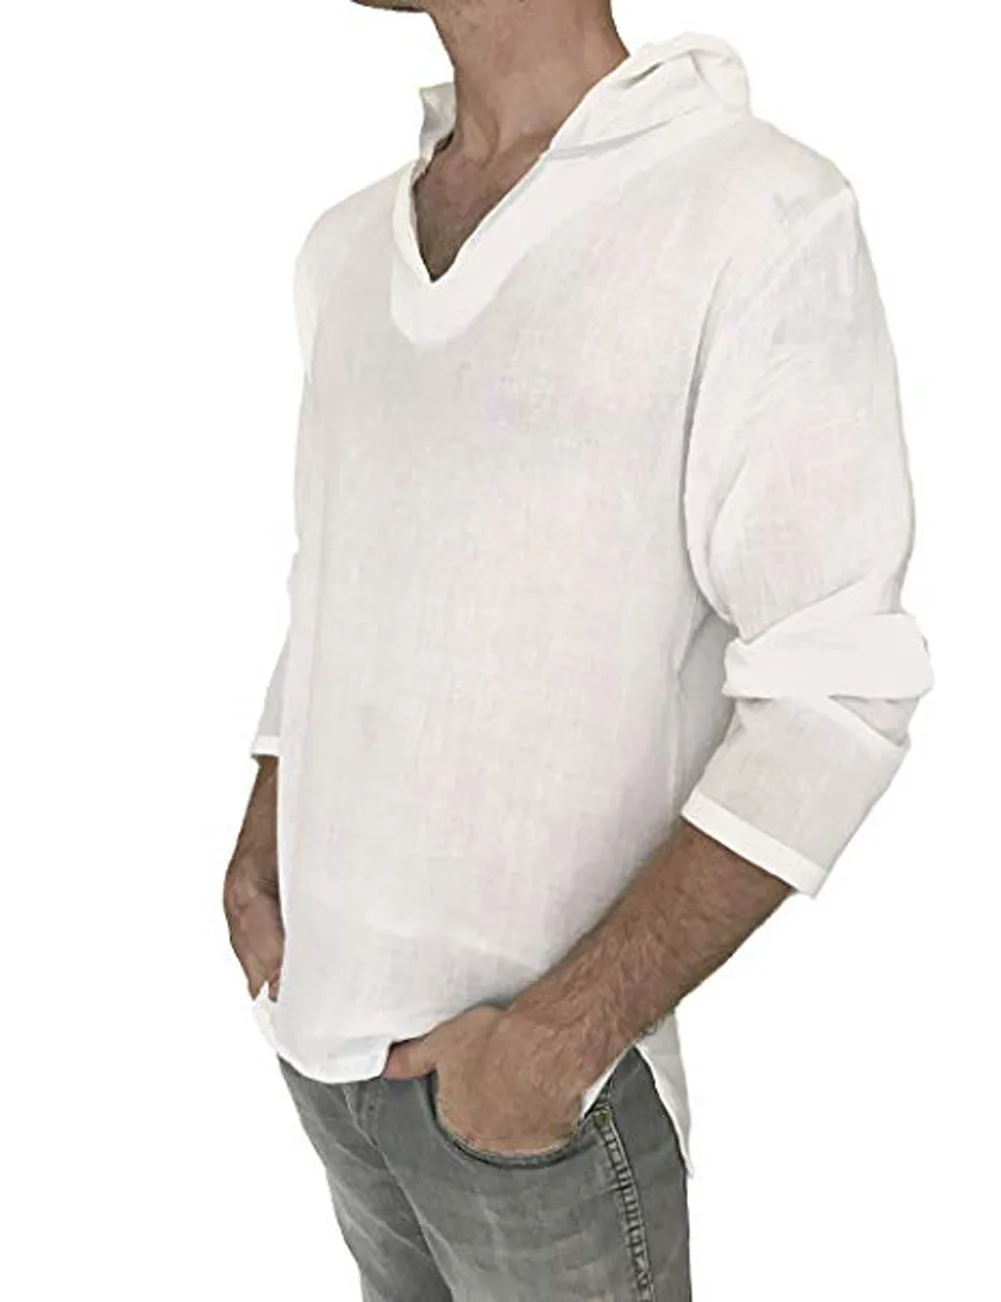 Новая Мужская льняная футболка с капюшоном, Мужская Осенняя Однотонная футболка с длинным рукавом, пуловер, мужская хлопковая льняная белая футболка, M-3XL - Цвет: Белый